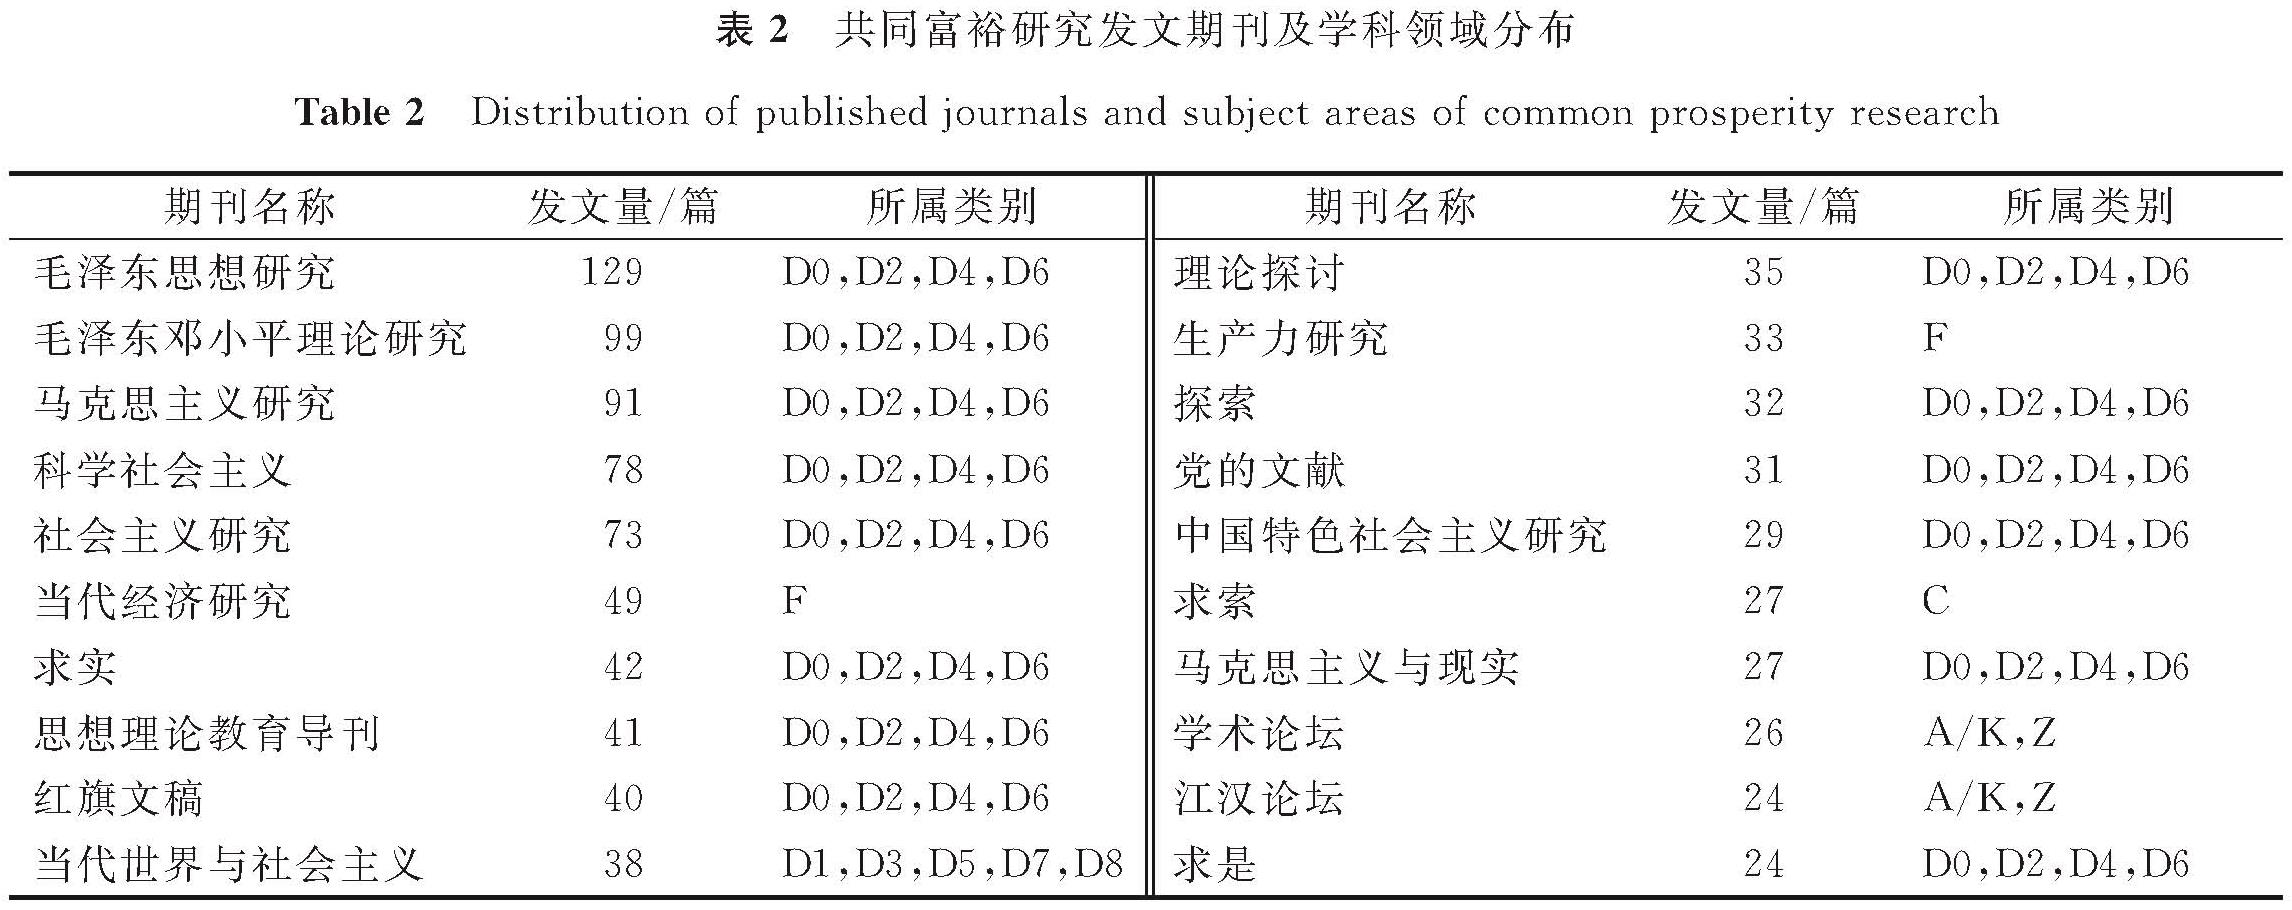 表2 共同富裕研究发文期刊及学科领域分布<br/>Table 2 Distribution of published journals and subject areas of common prosperity research